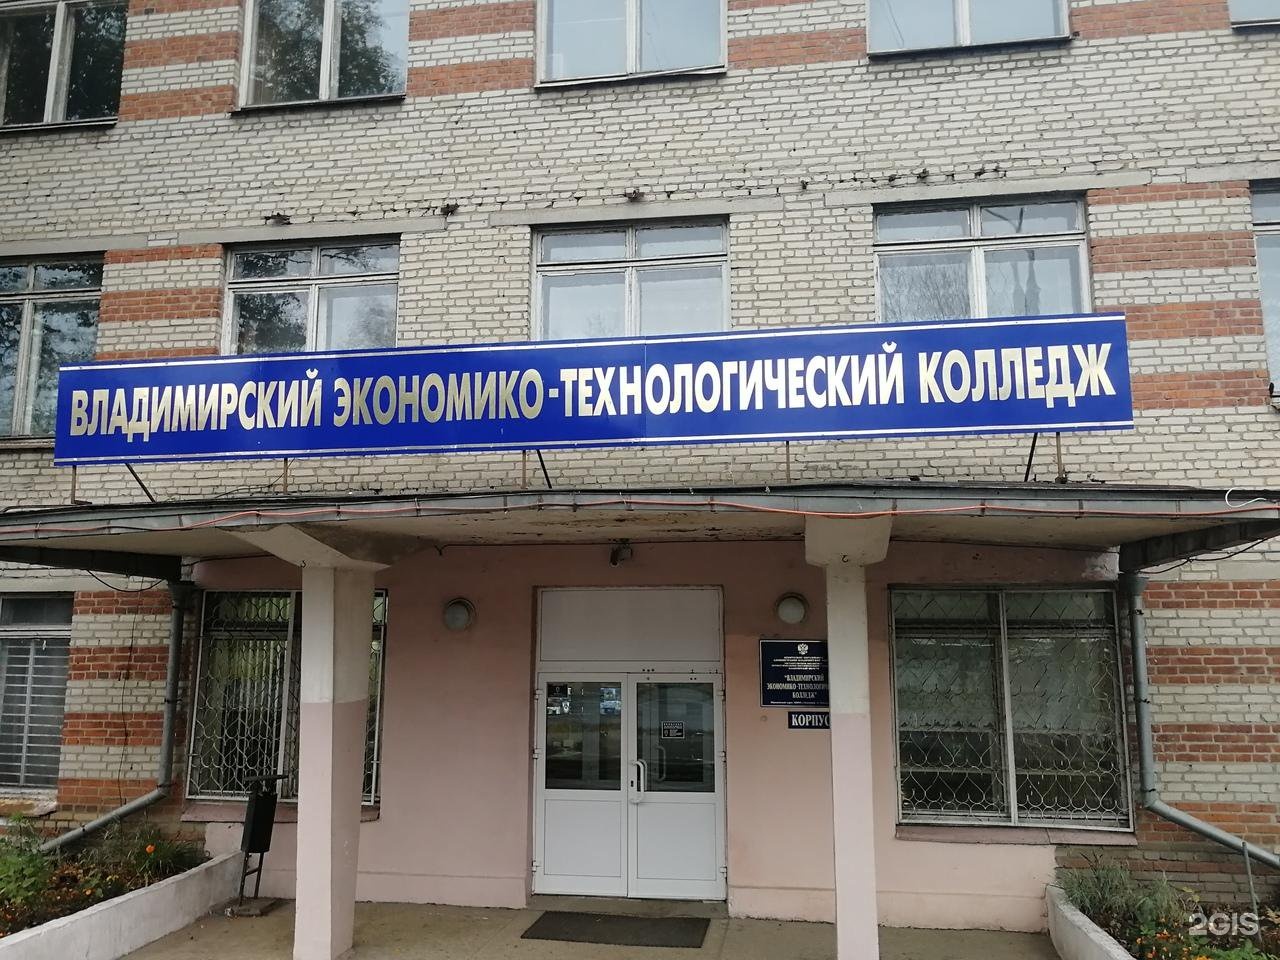 Владимирский технологический колледж сайт